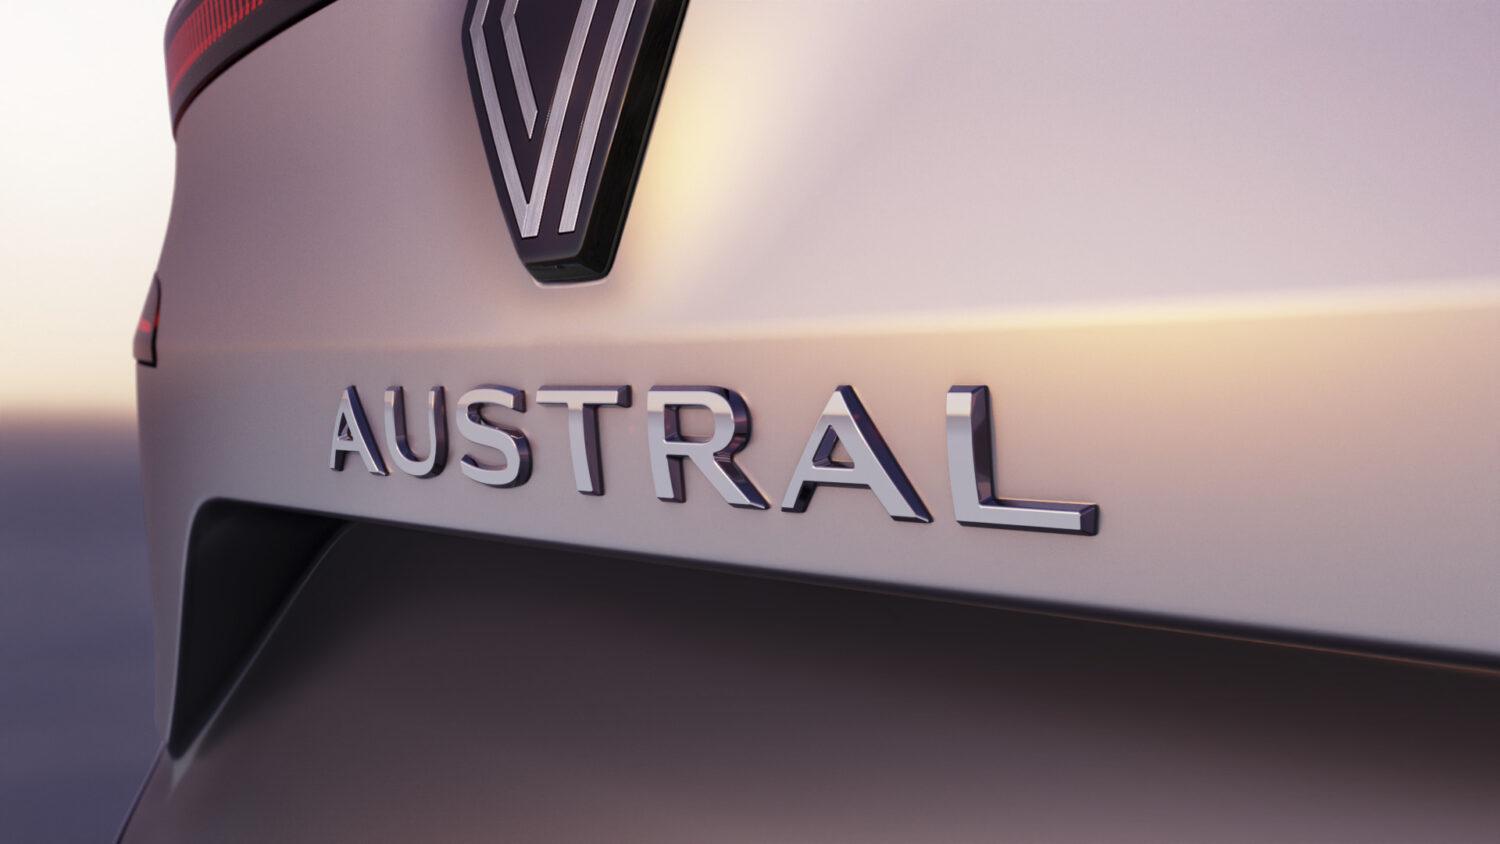 2021 -  Renault dévoile le nom de son nouveau SUV : Austral